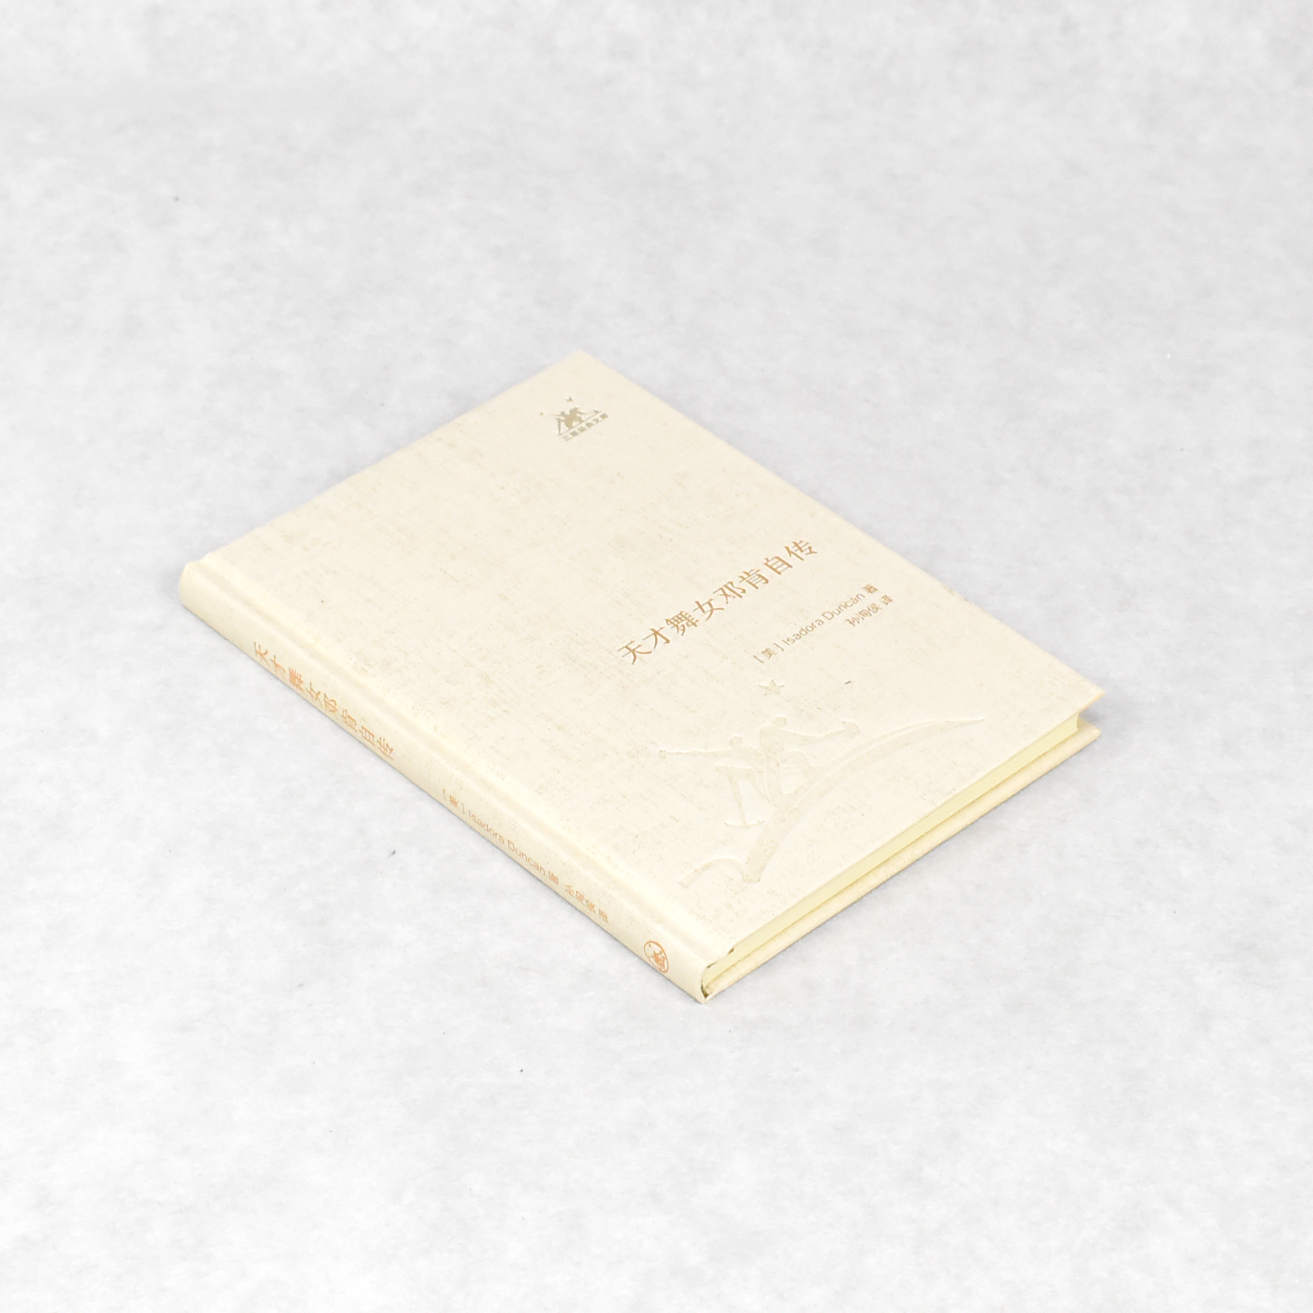 正版天才舞女邓肯自传 作者: [美] Isadora Duncan  出版社: 生活·读书·新知三联书店ISBN: 9787108039040 售价高于定价